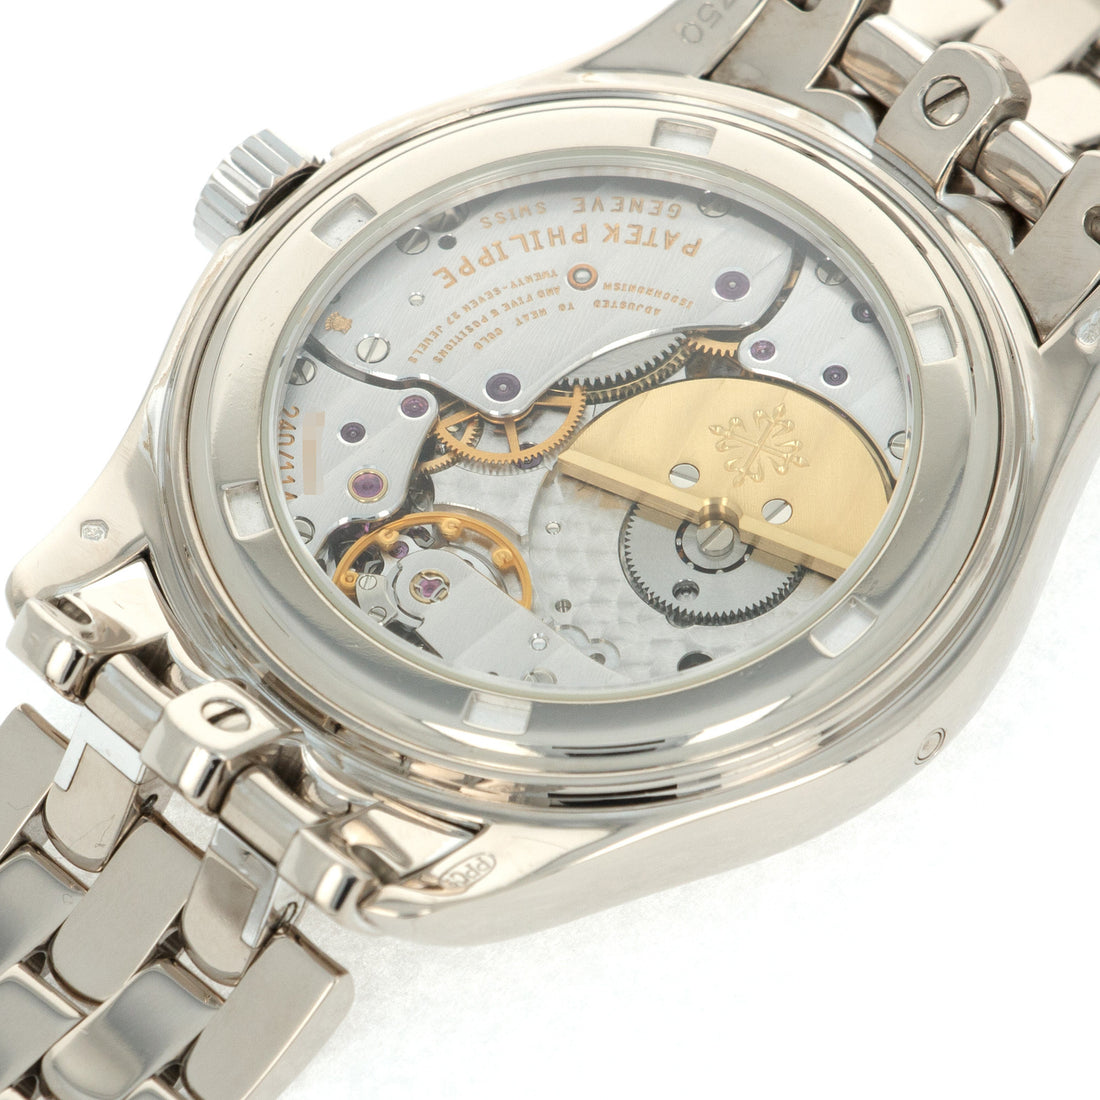 Patek Philippe White Gold Perpetual Calendar Watch Ref. 5136